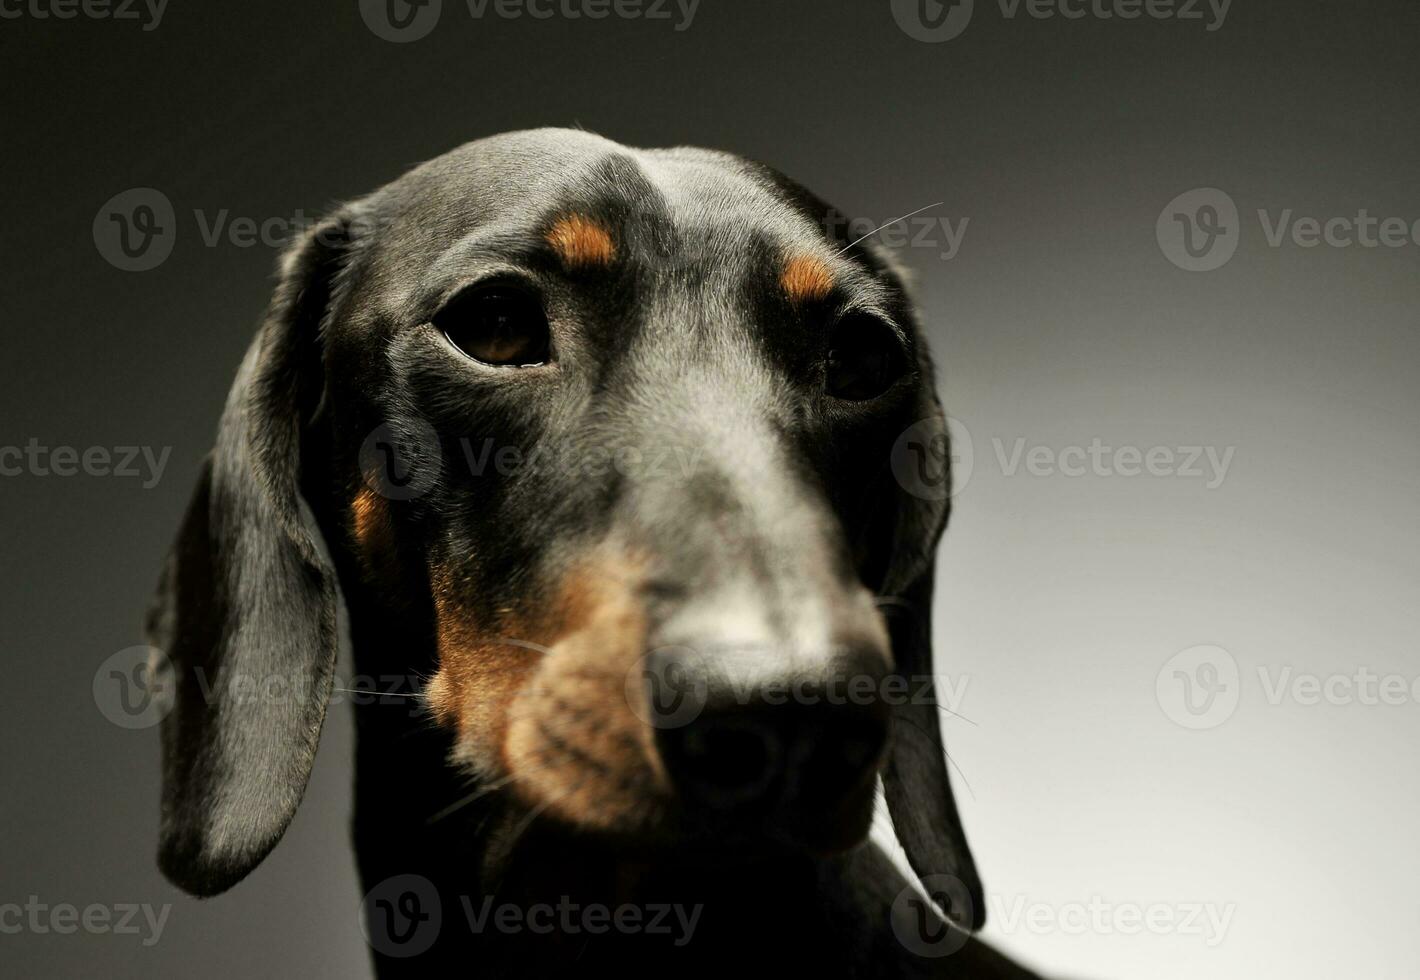 retrato do a adorável Preto e bronzeado curto cabelos dachshund olhando curiosamente foto